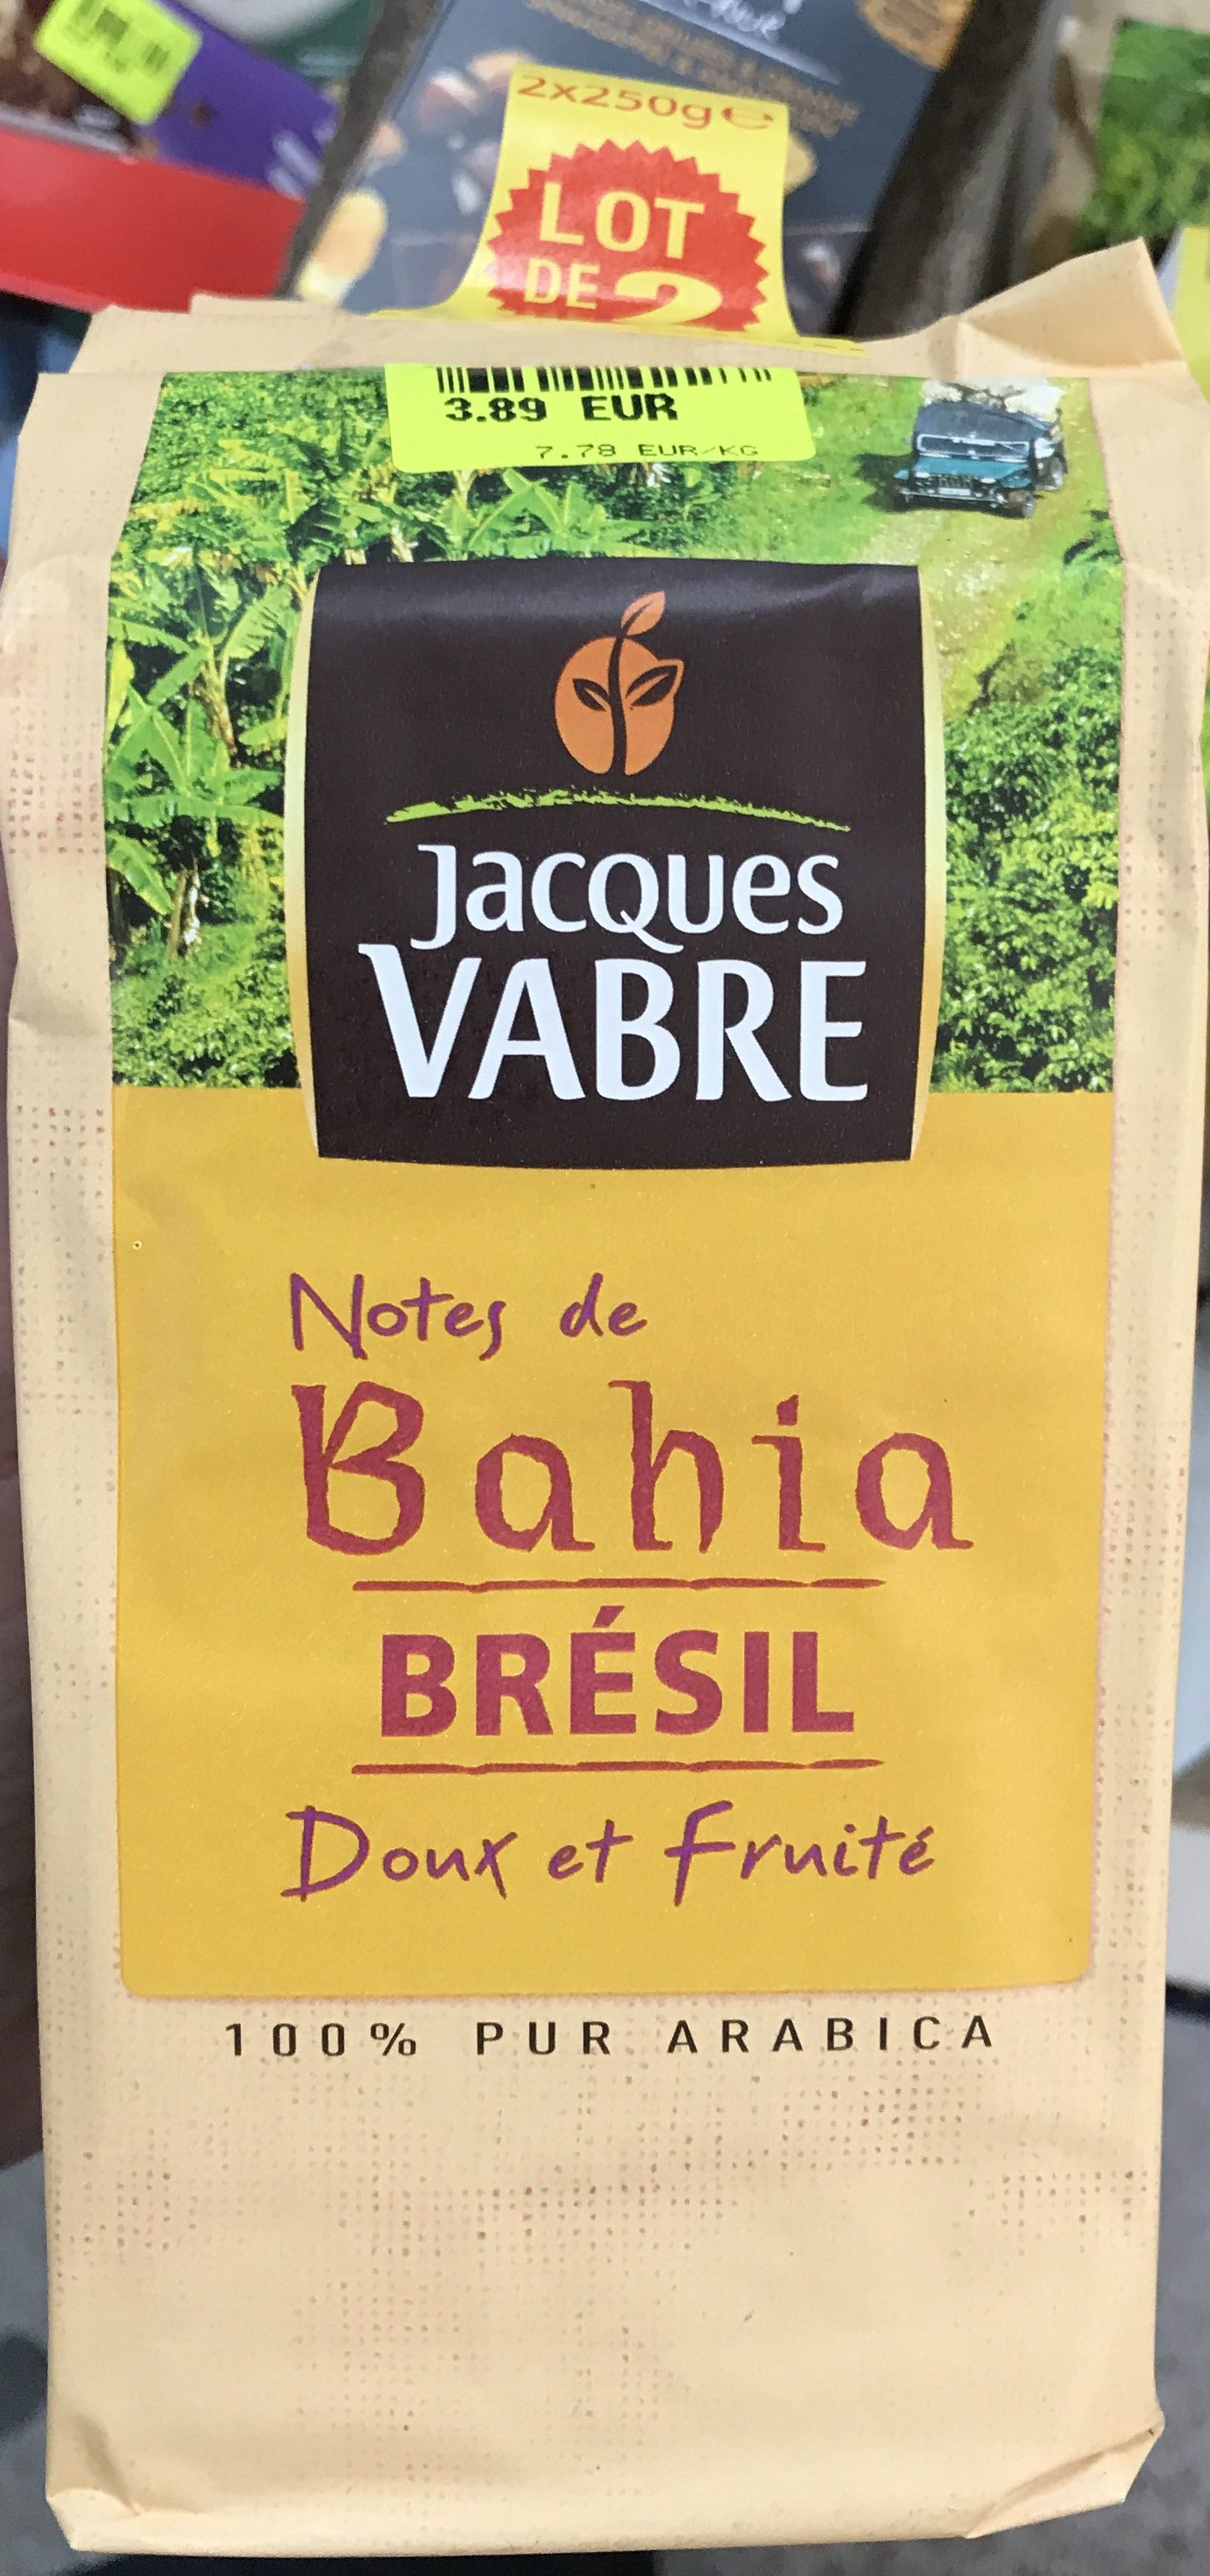 Notes de Bahia Brésil (lot de 2) - Product - fr